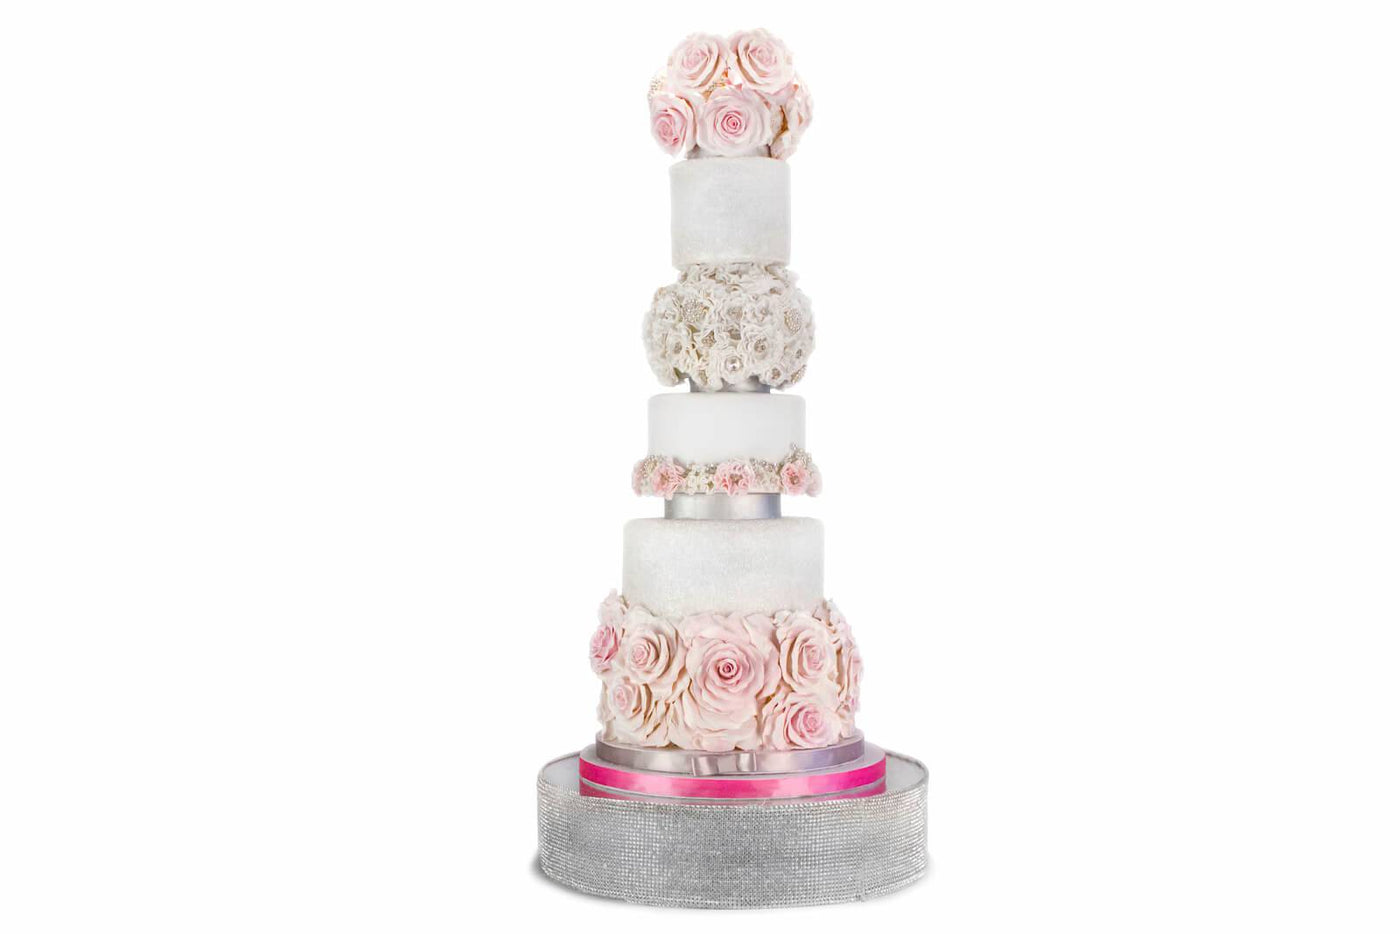 Showpiece Wedding Cake - Sweet E's Bake Shop